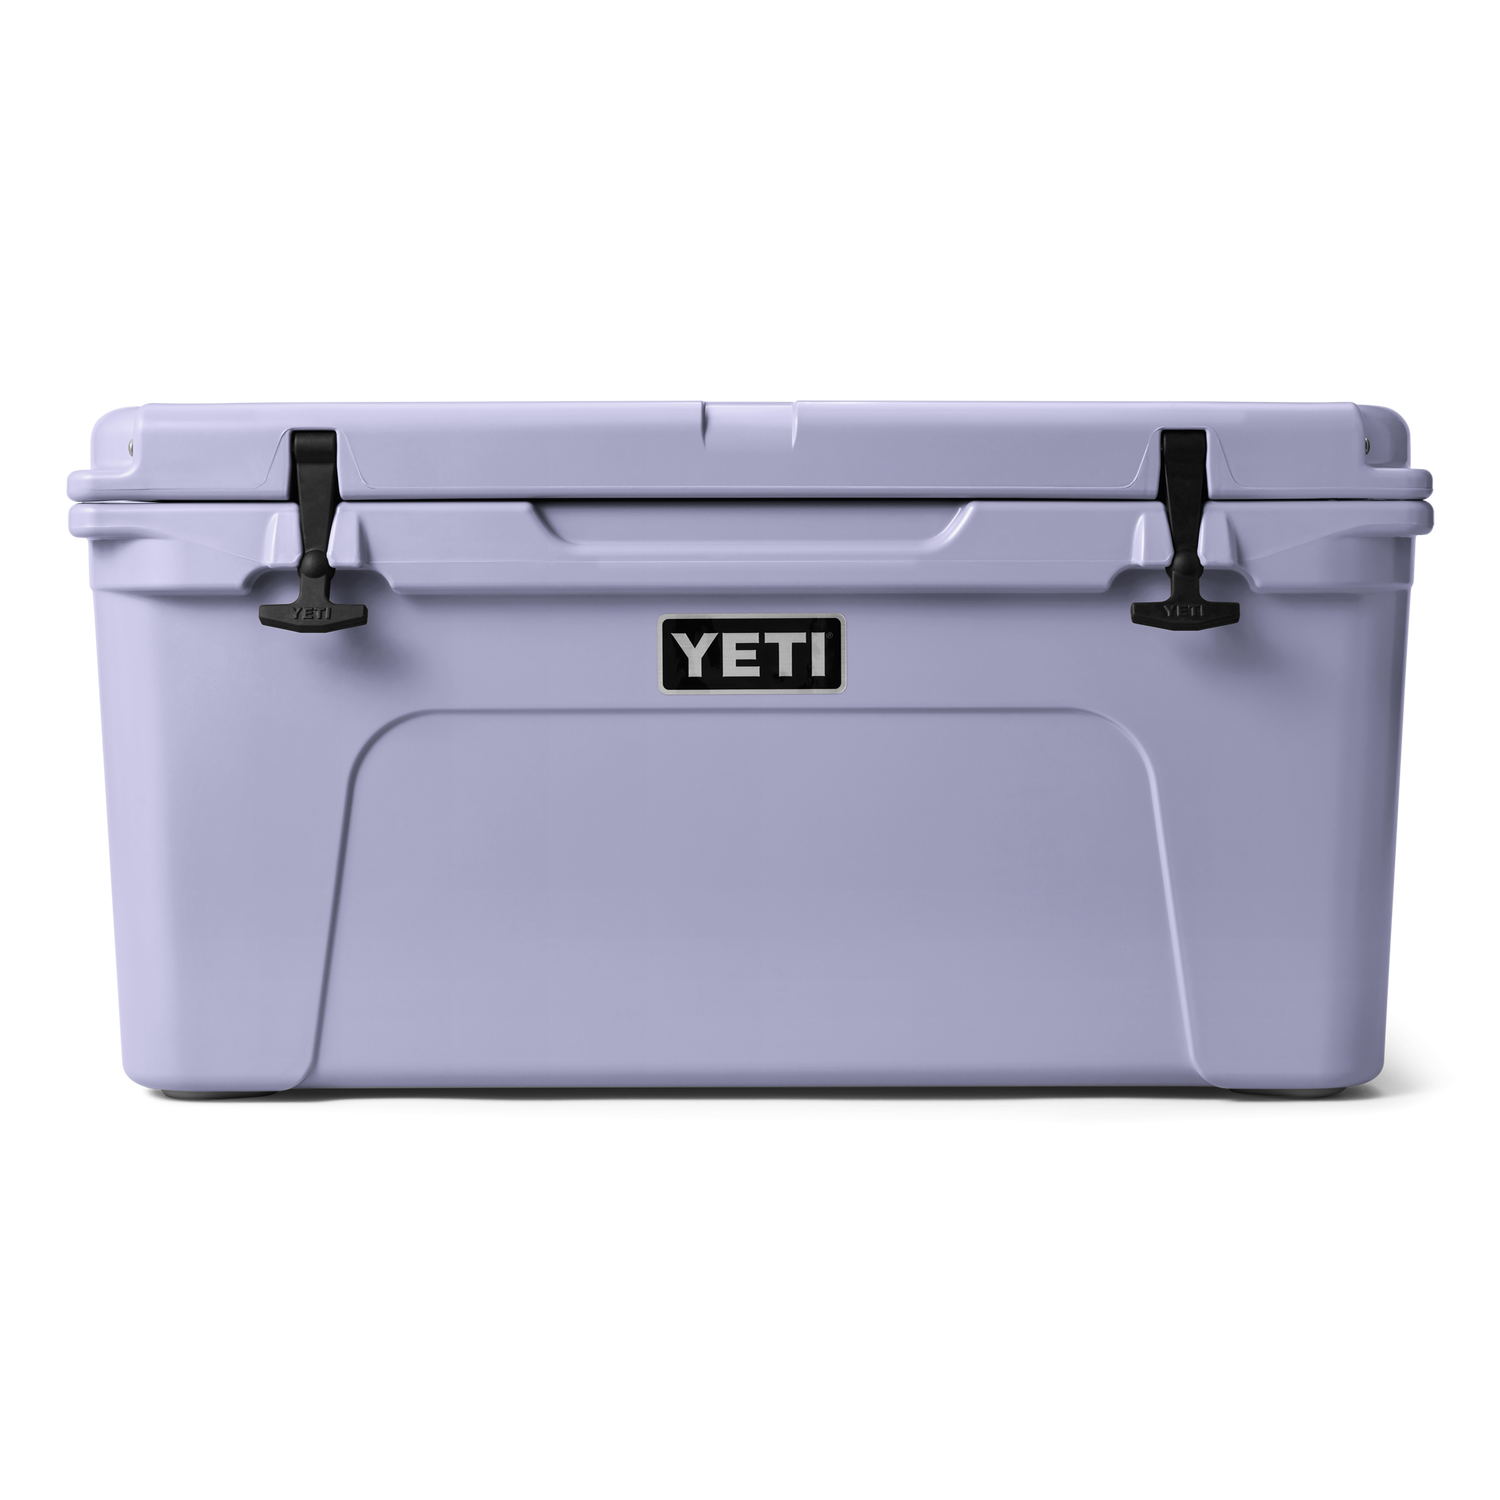 YETI® Tundra 65 Cool Box – YETI UK LIMITED